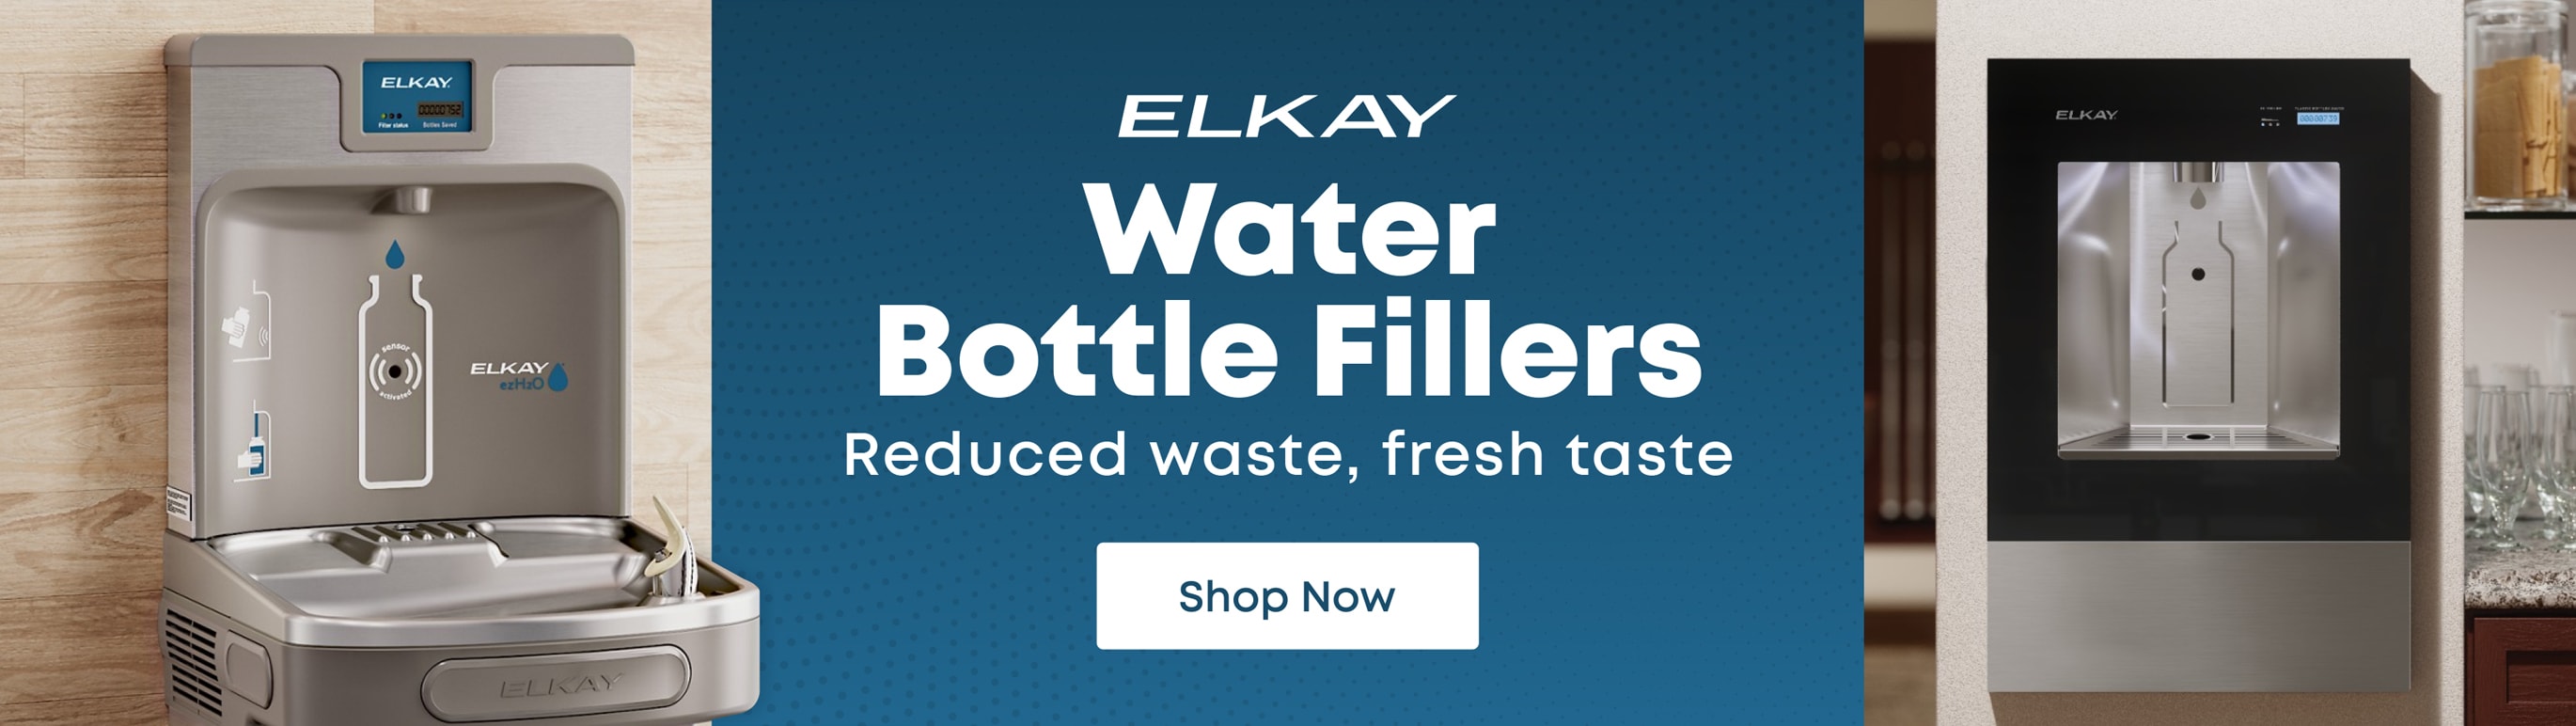 Elkay Water Bottle Fillers